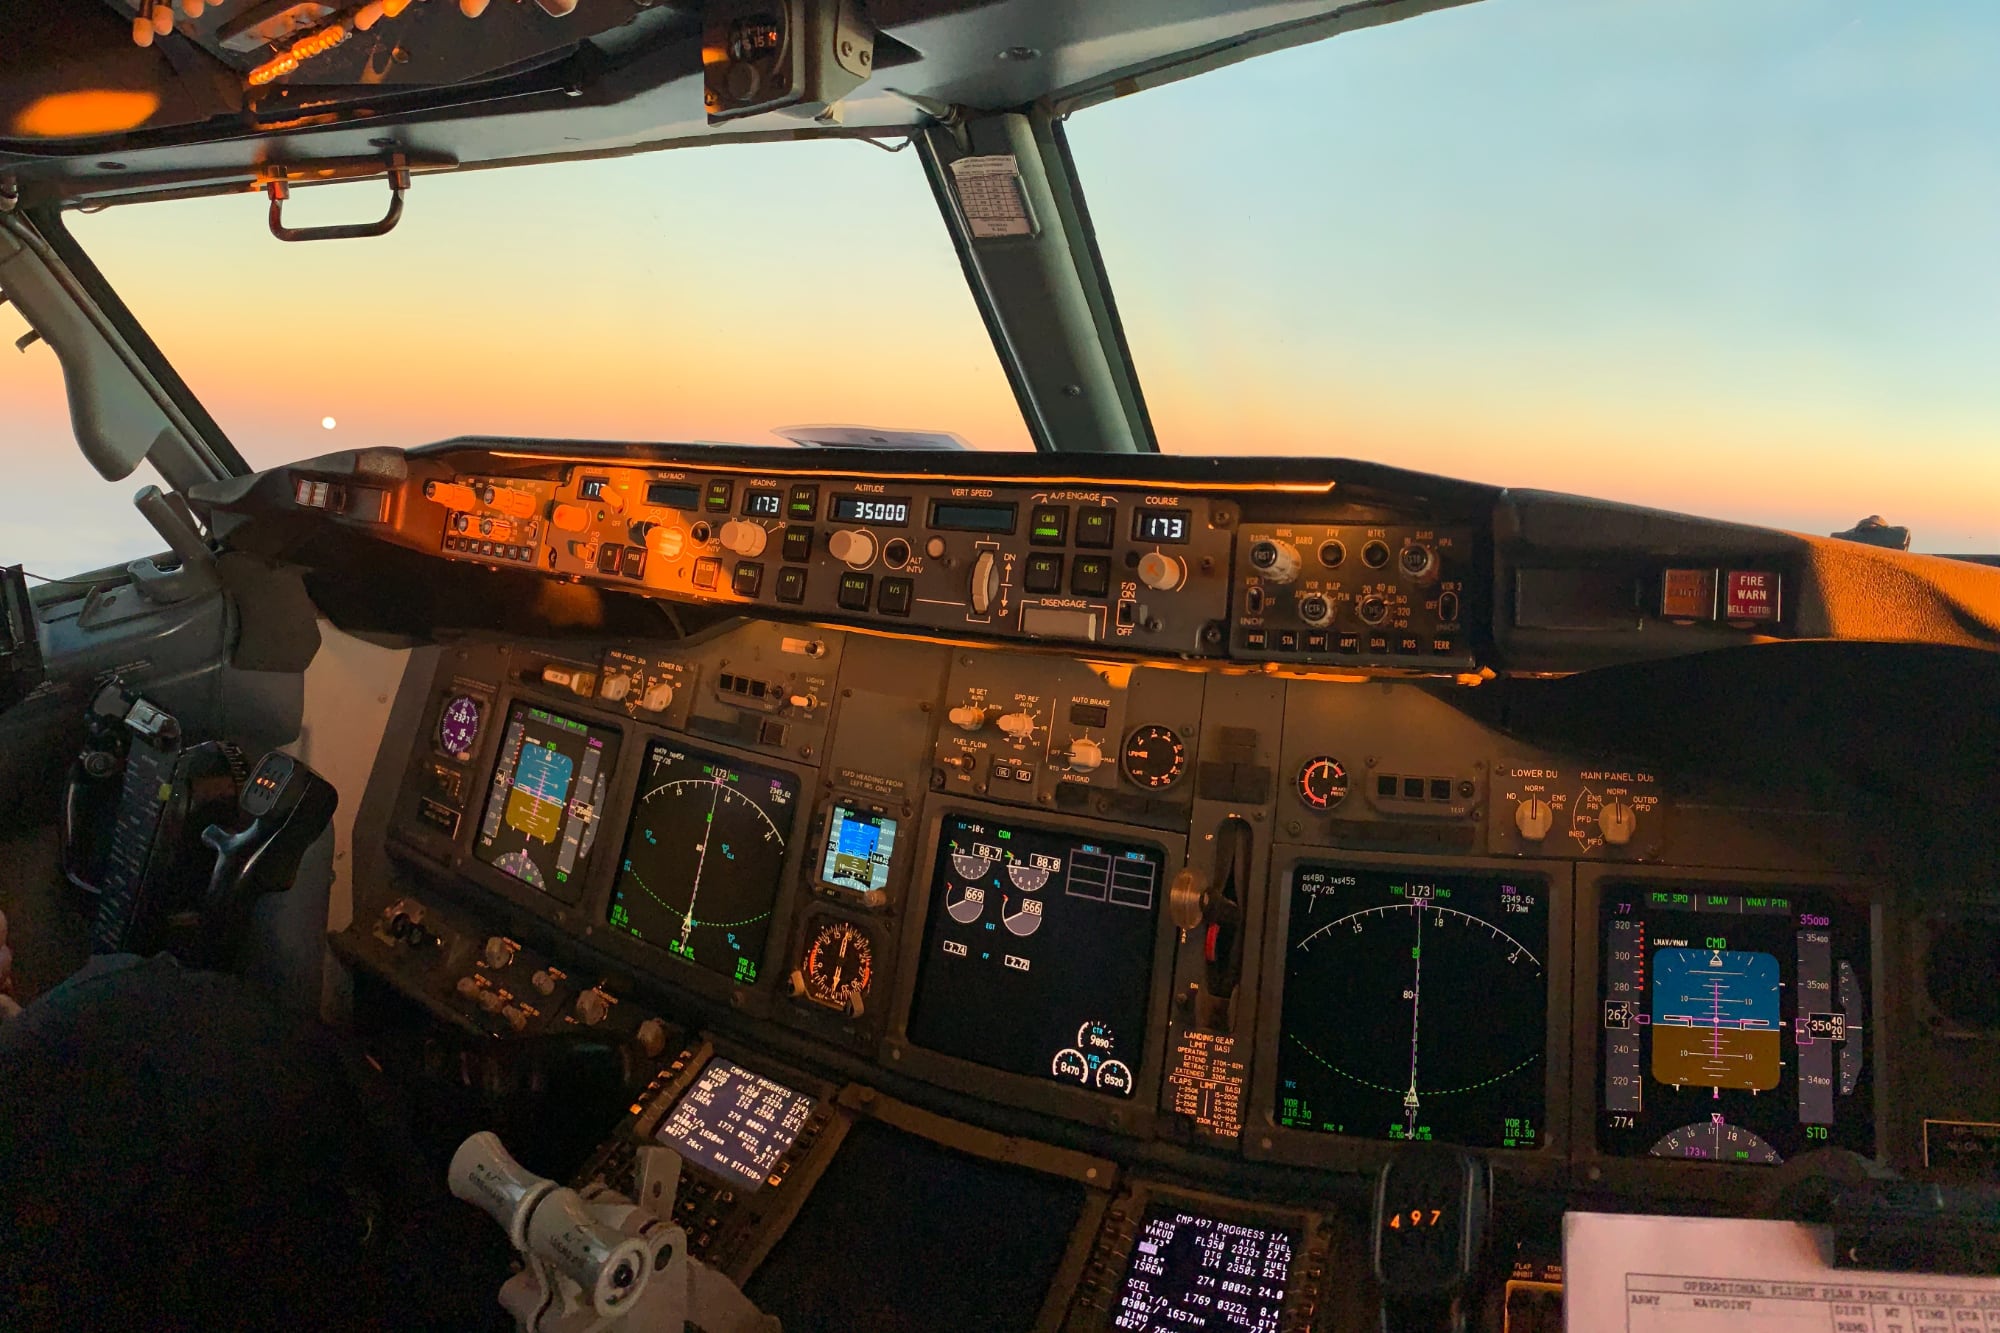 Cockpit de avião com painéis de instrumentos digitais.